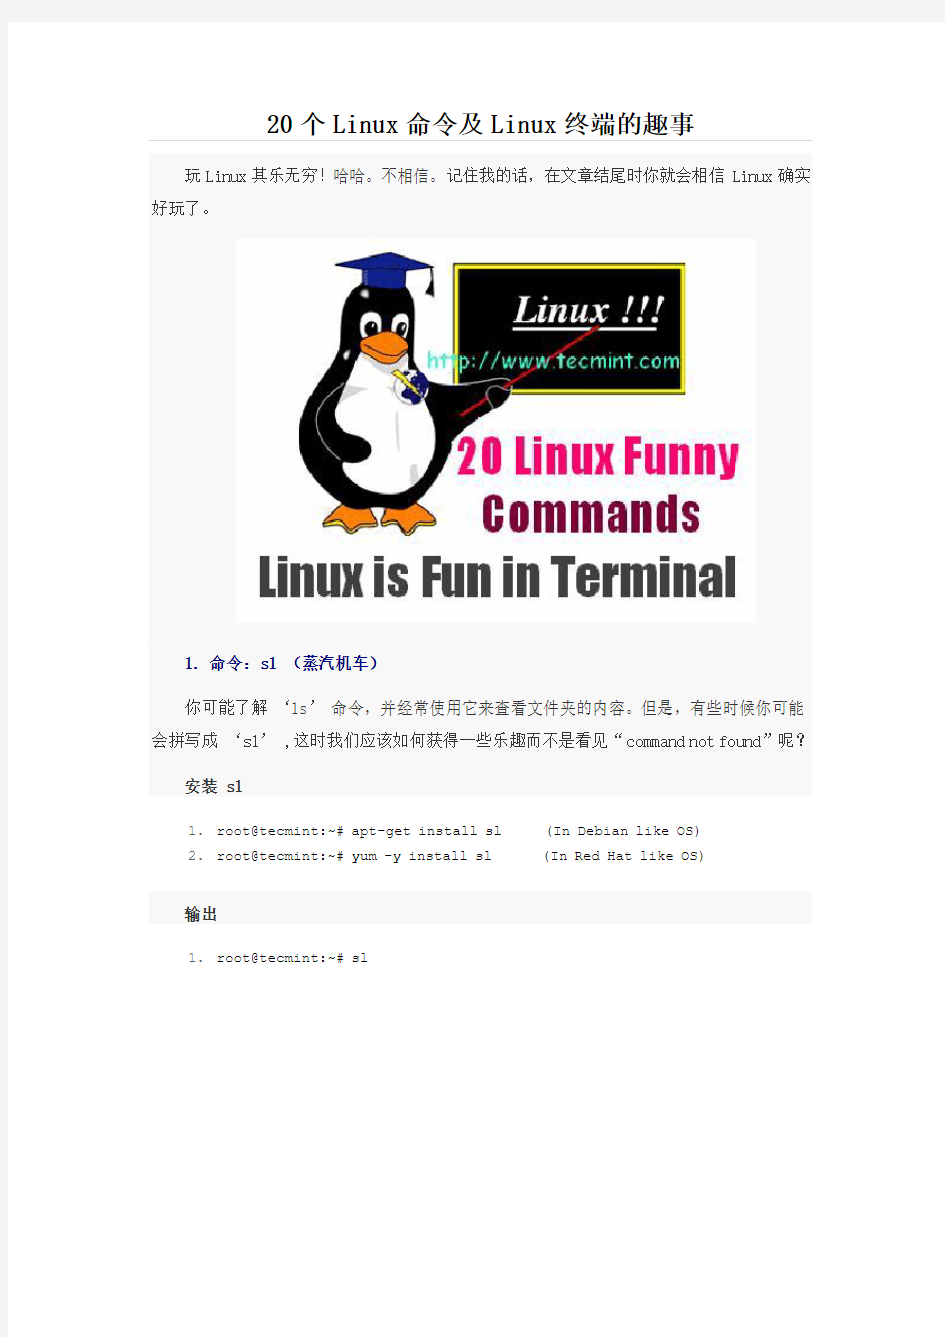 20个Linux命令及Linux终端的趣事